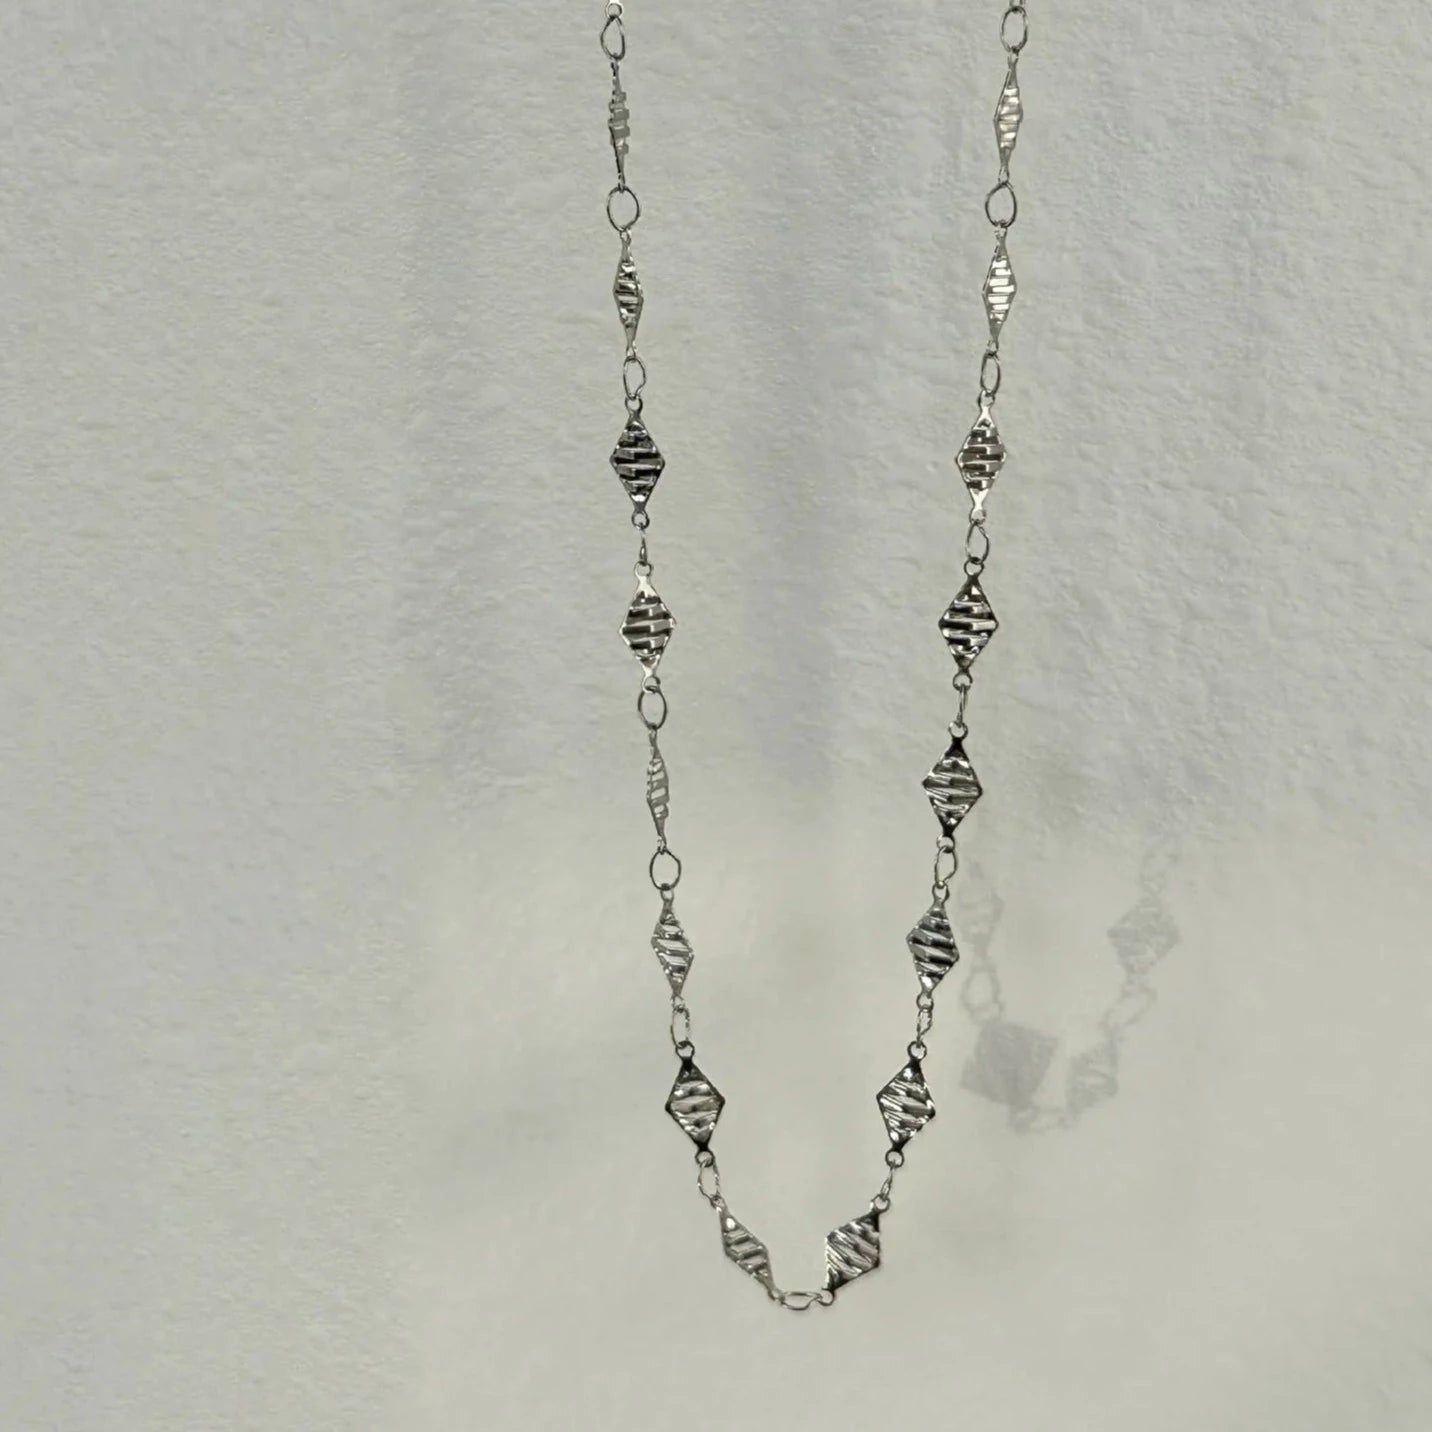 Rhinestone Women's Waist Chain-Black Diamonds New York